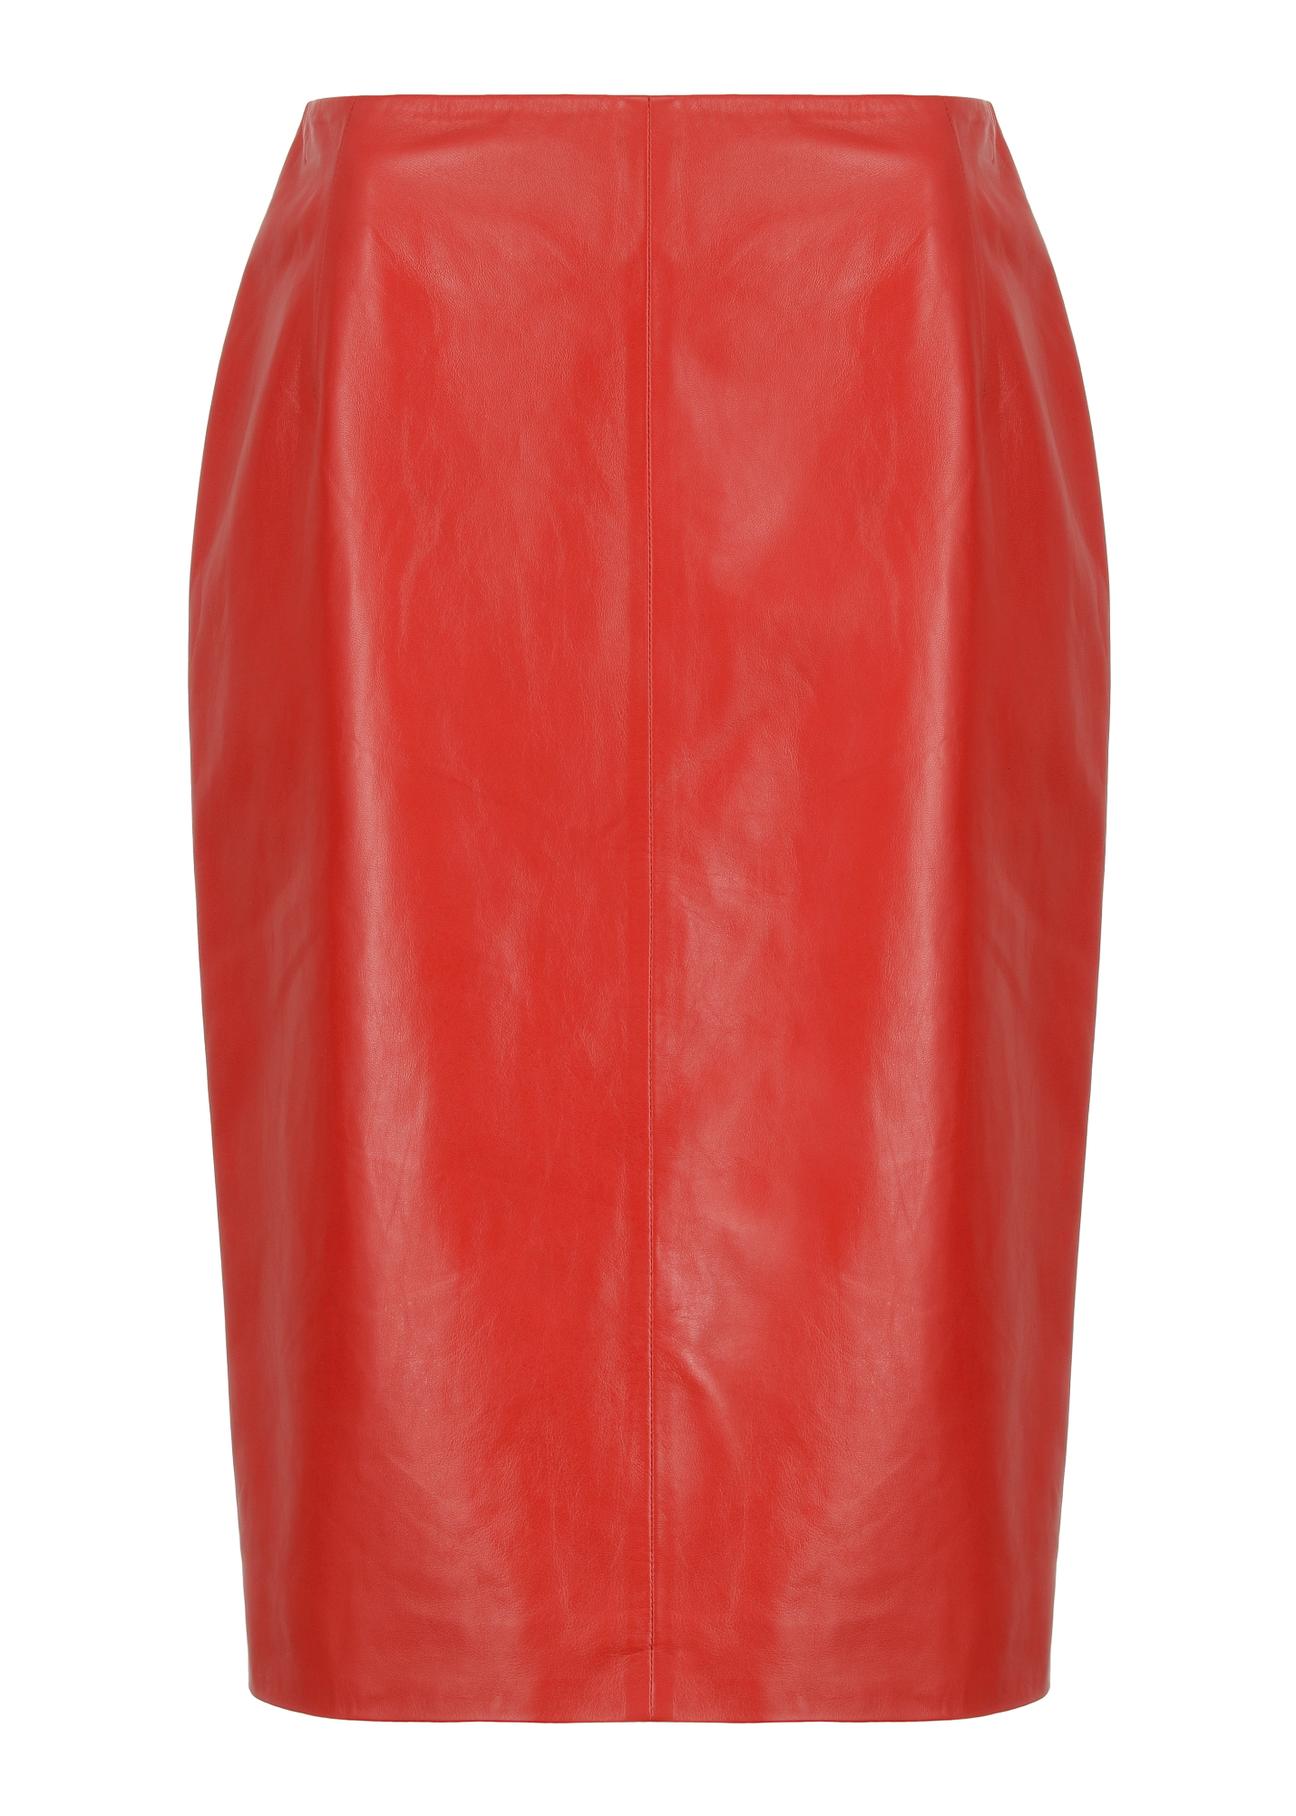 Czerwona spódnica ze skóry naturalnej SPCDS-0031-1320(W23)